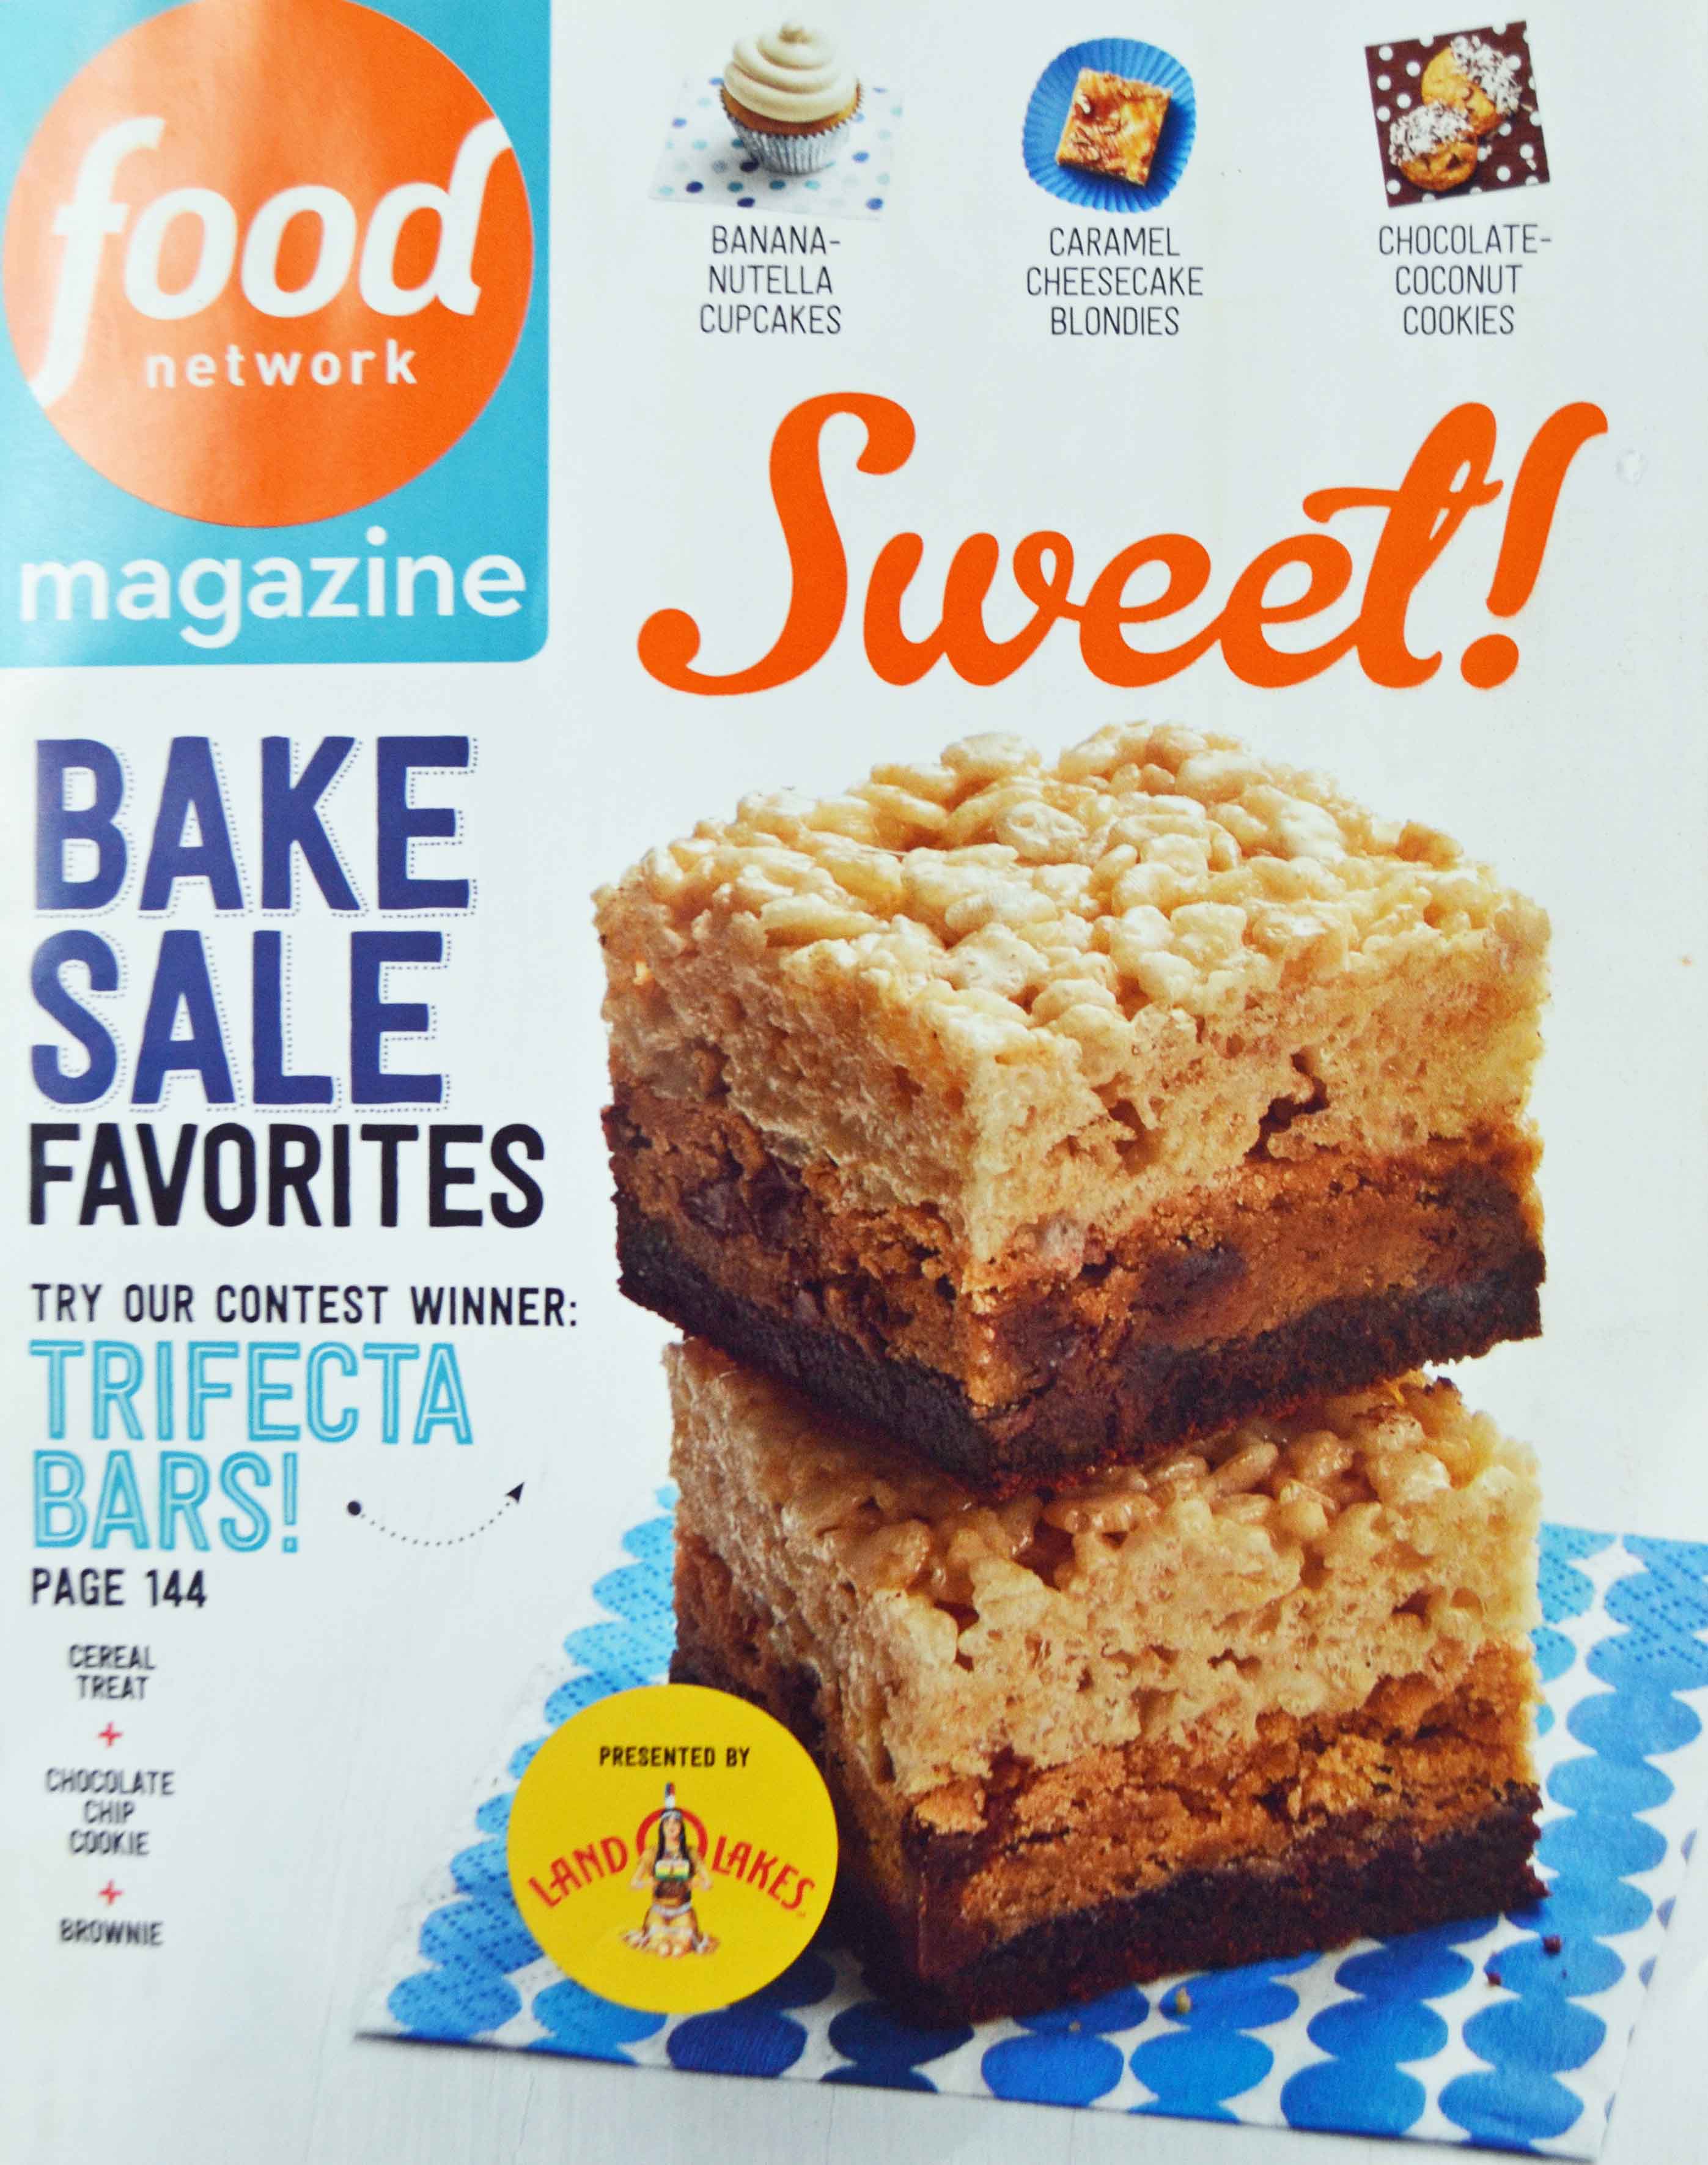 Bake Sale Trifecta Bars Food Network Magazine by Melissa Stadler with Modern Honey l www.modernhoney.com